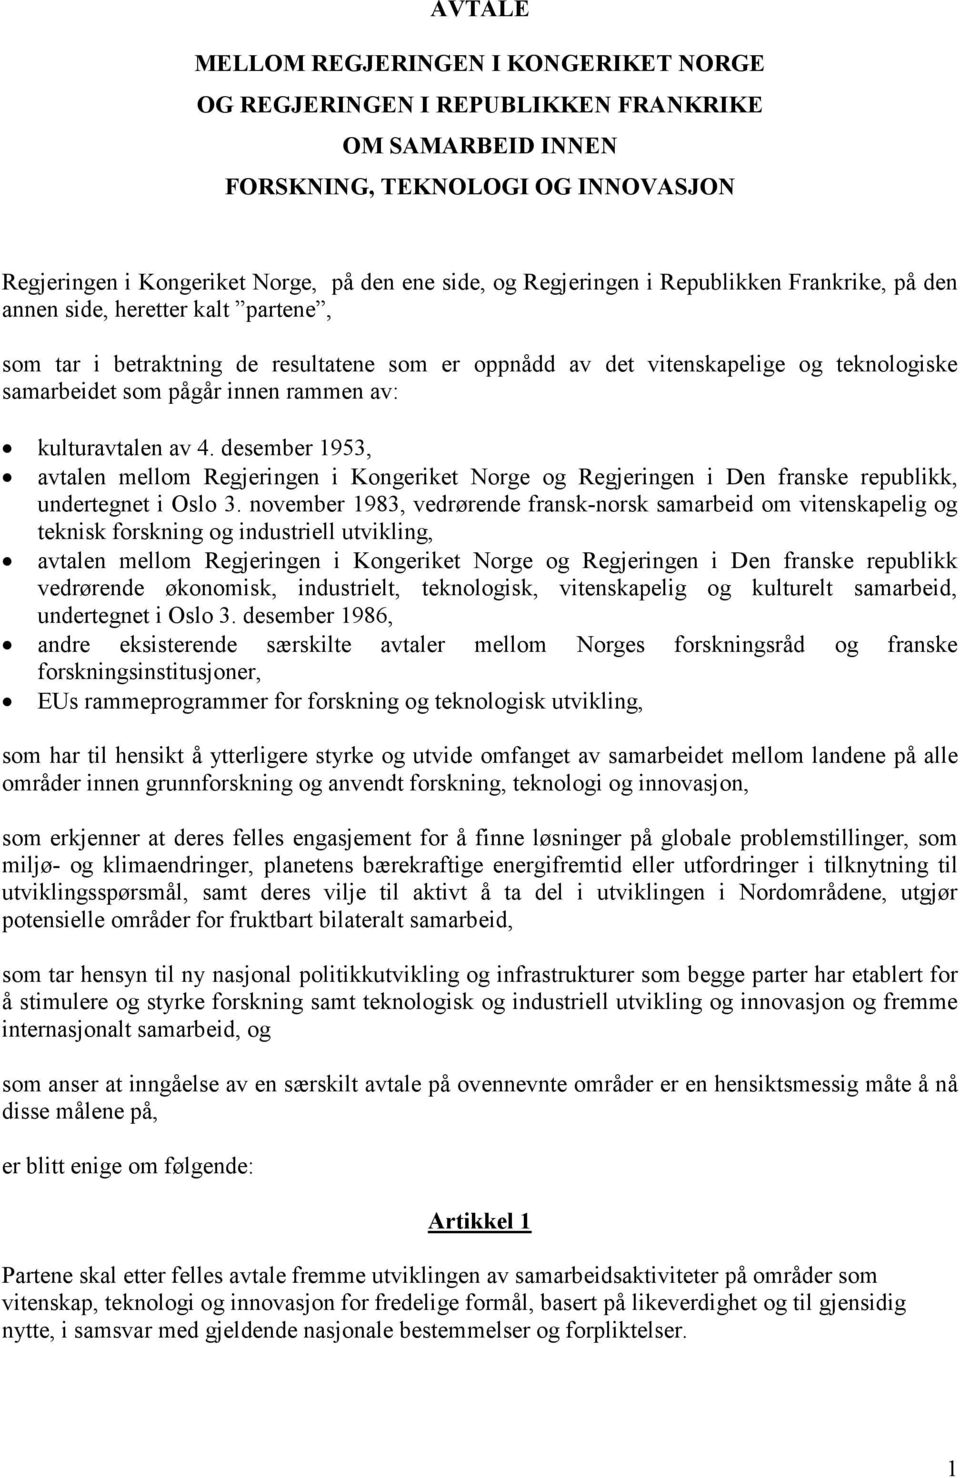 rammen av: kulturavtalen av 4. desember 1953, avtalen mellom Regjeringen i Kongeriket Norge og Regjeringen i Den franske republikk, undertegnet i Oslo 3.